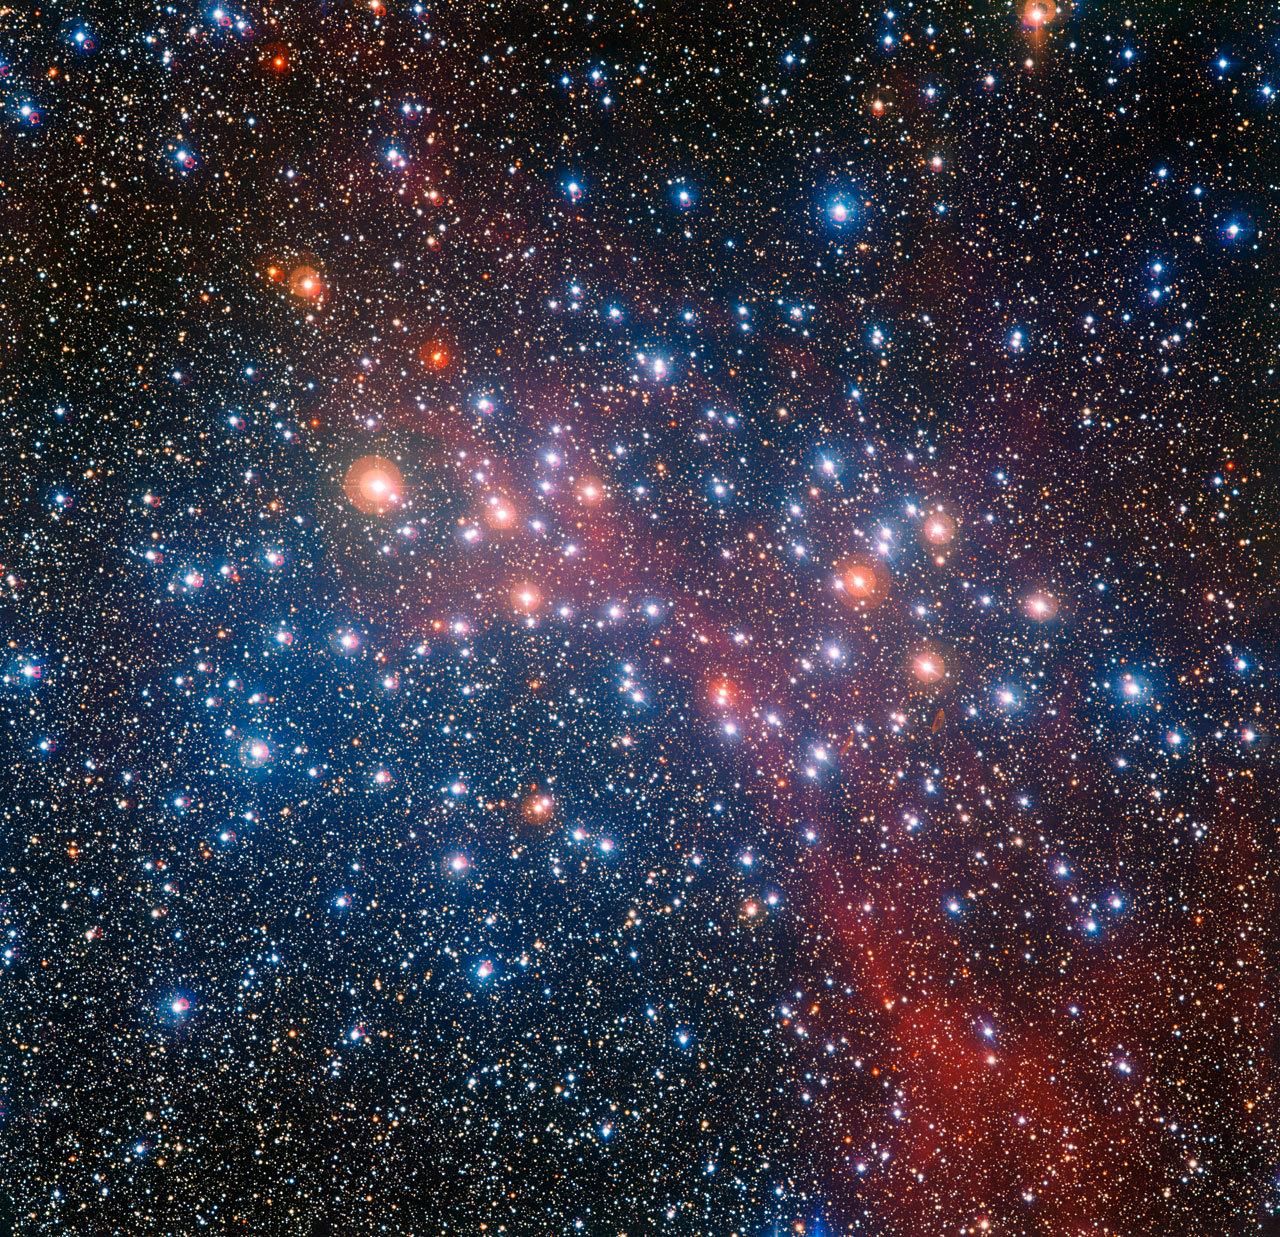 Stjärnor bildas ur stora moln av gas och stoft i den interstellära rymden. På bilden en stjärnhop som är runt 300 miljoner år gammal och som går under namnet NGC 3532, men är känd som Önskebrunnen eftersom stjärnorna ligger utspridda över himlen som glänsande silvermynt.